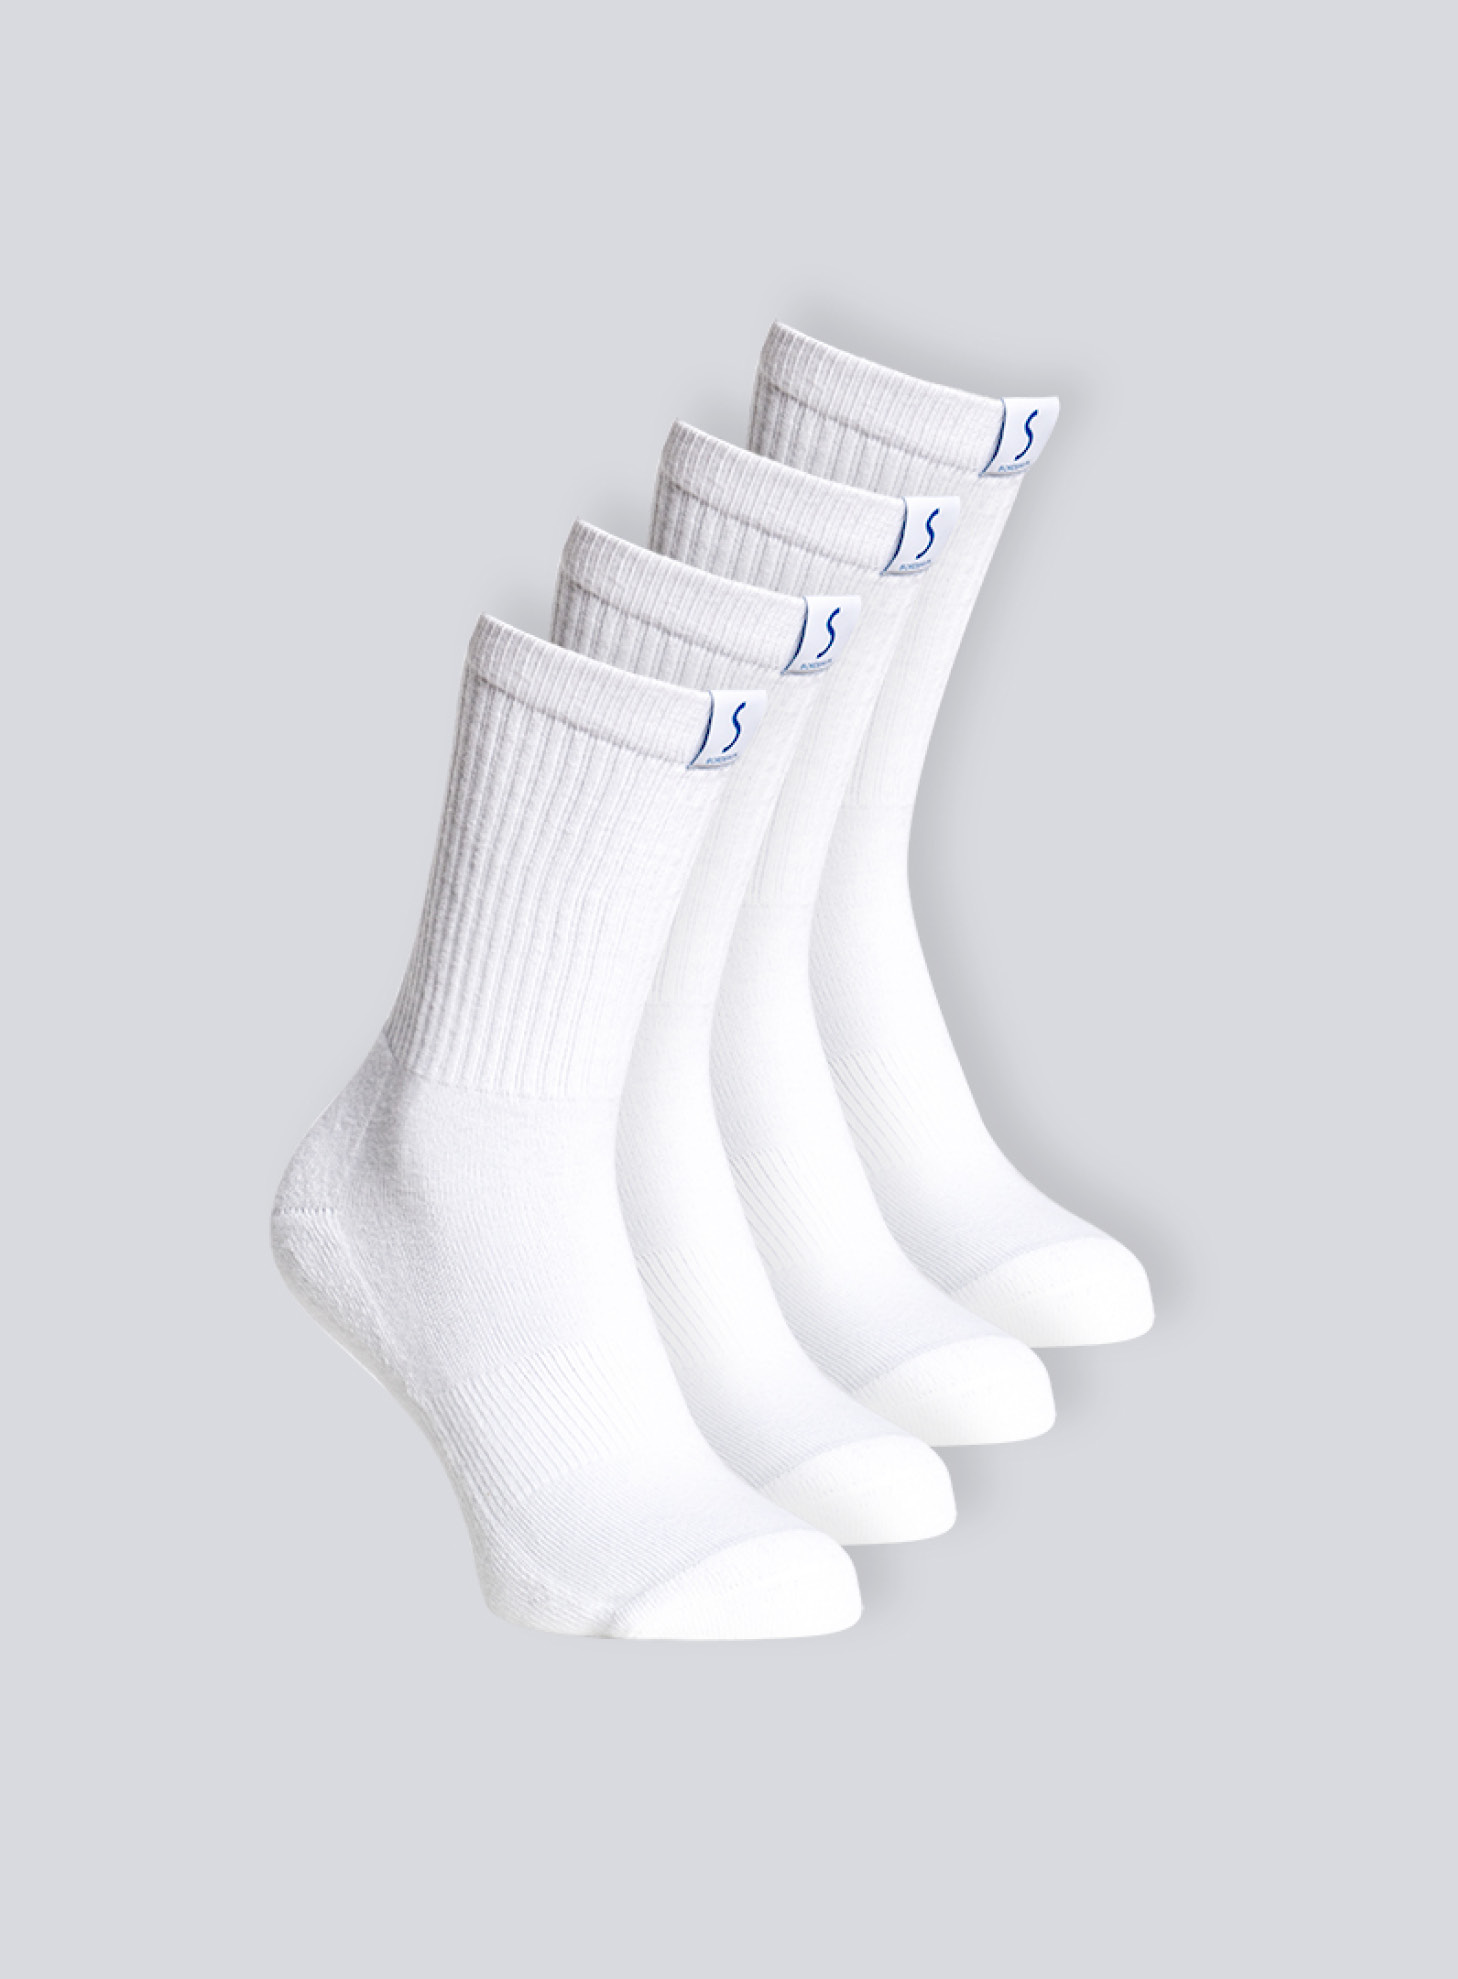 Quatre paires de chaussettes mi-mollet blanche pour le sport pour homme de la marque S BORDEAUX